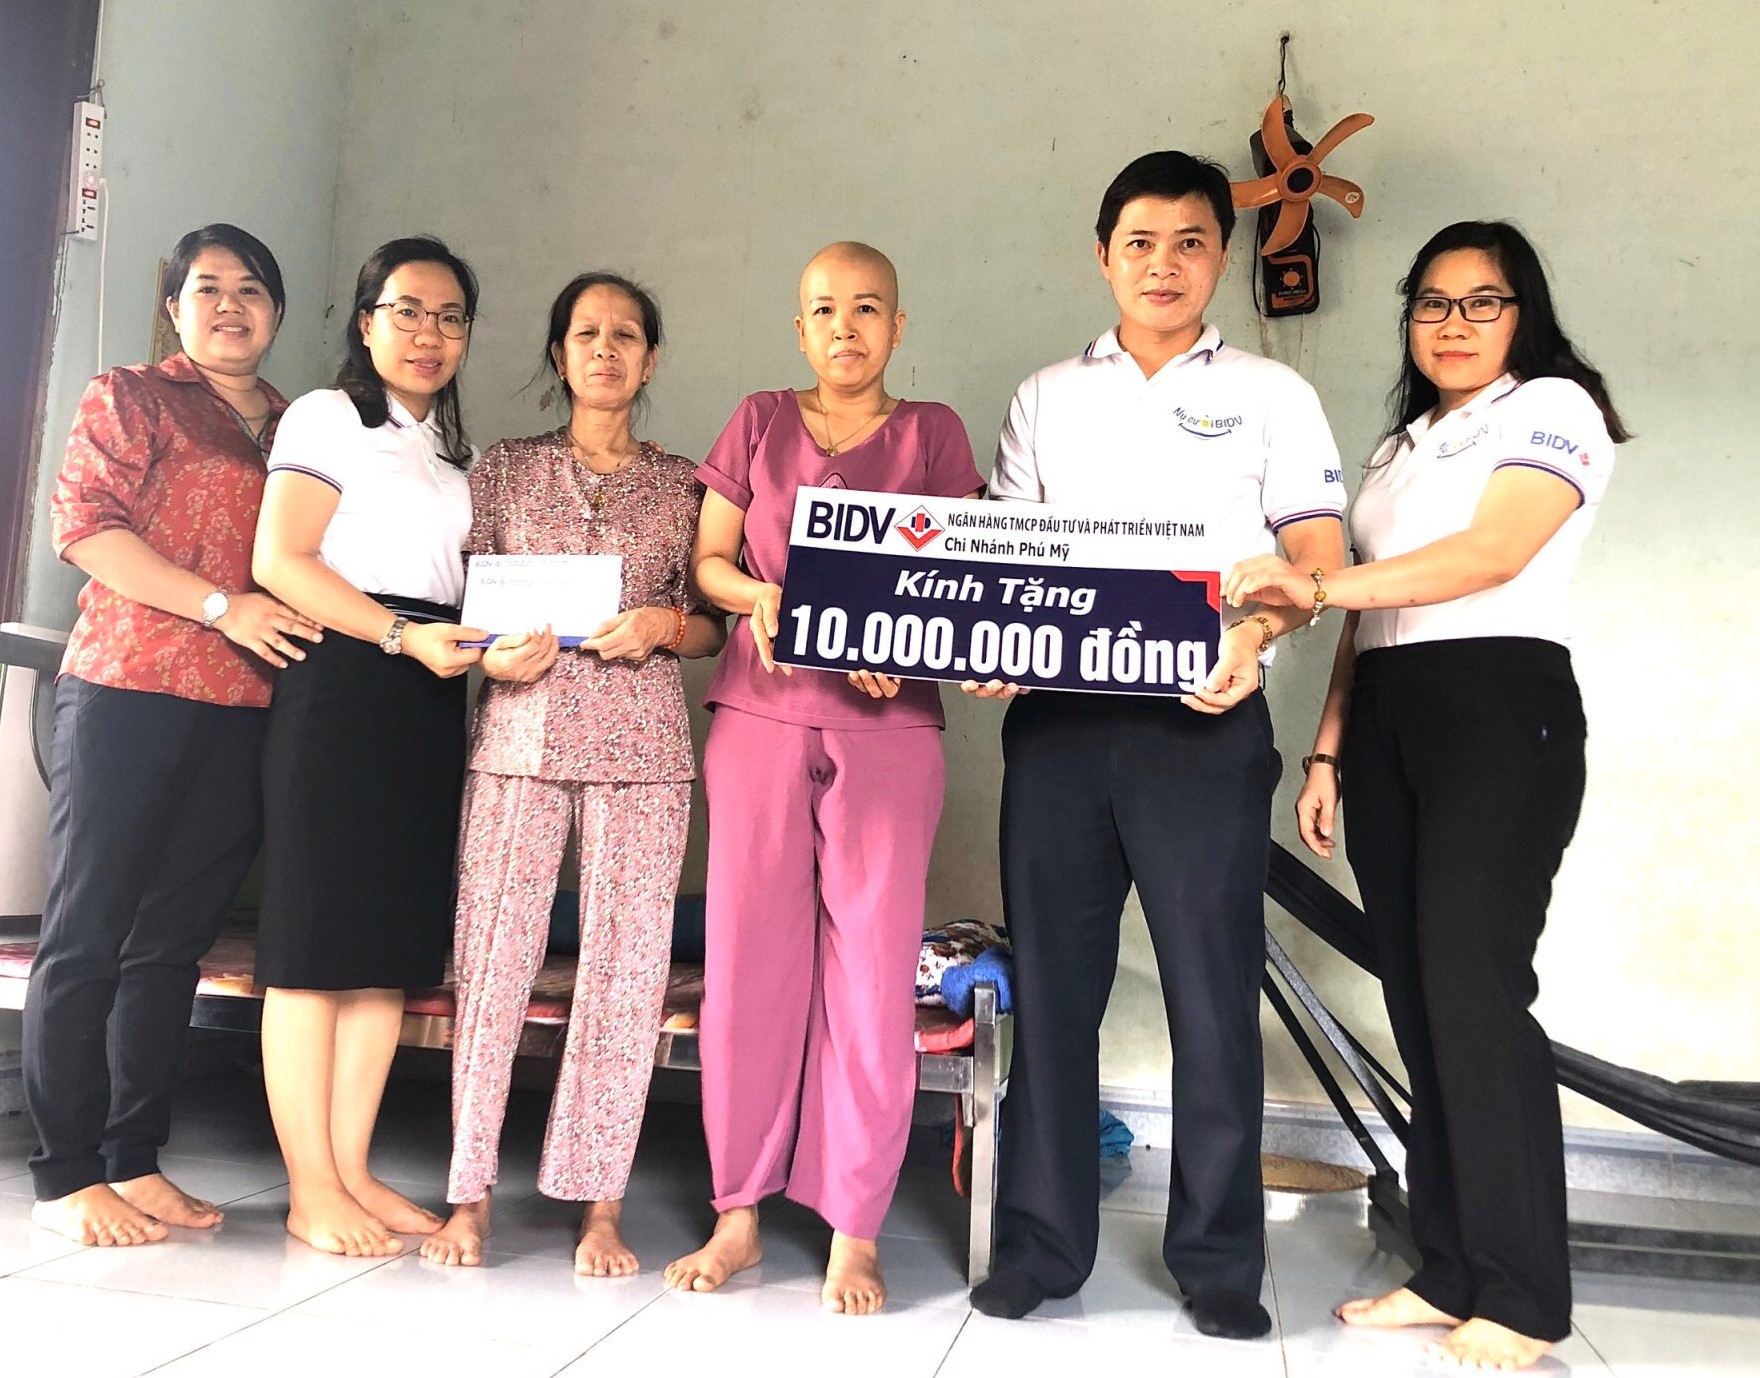 Đoàn công tác xã hội Chi nhánh BIDV Phú Mỹ tặng 10 triệu đồng cho gia đình bà Nguyễn Thị Hằng (thứ 3 từ phải sang).